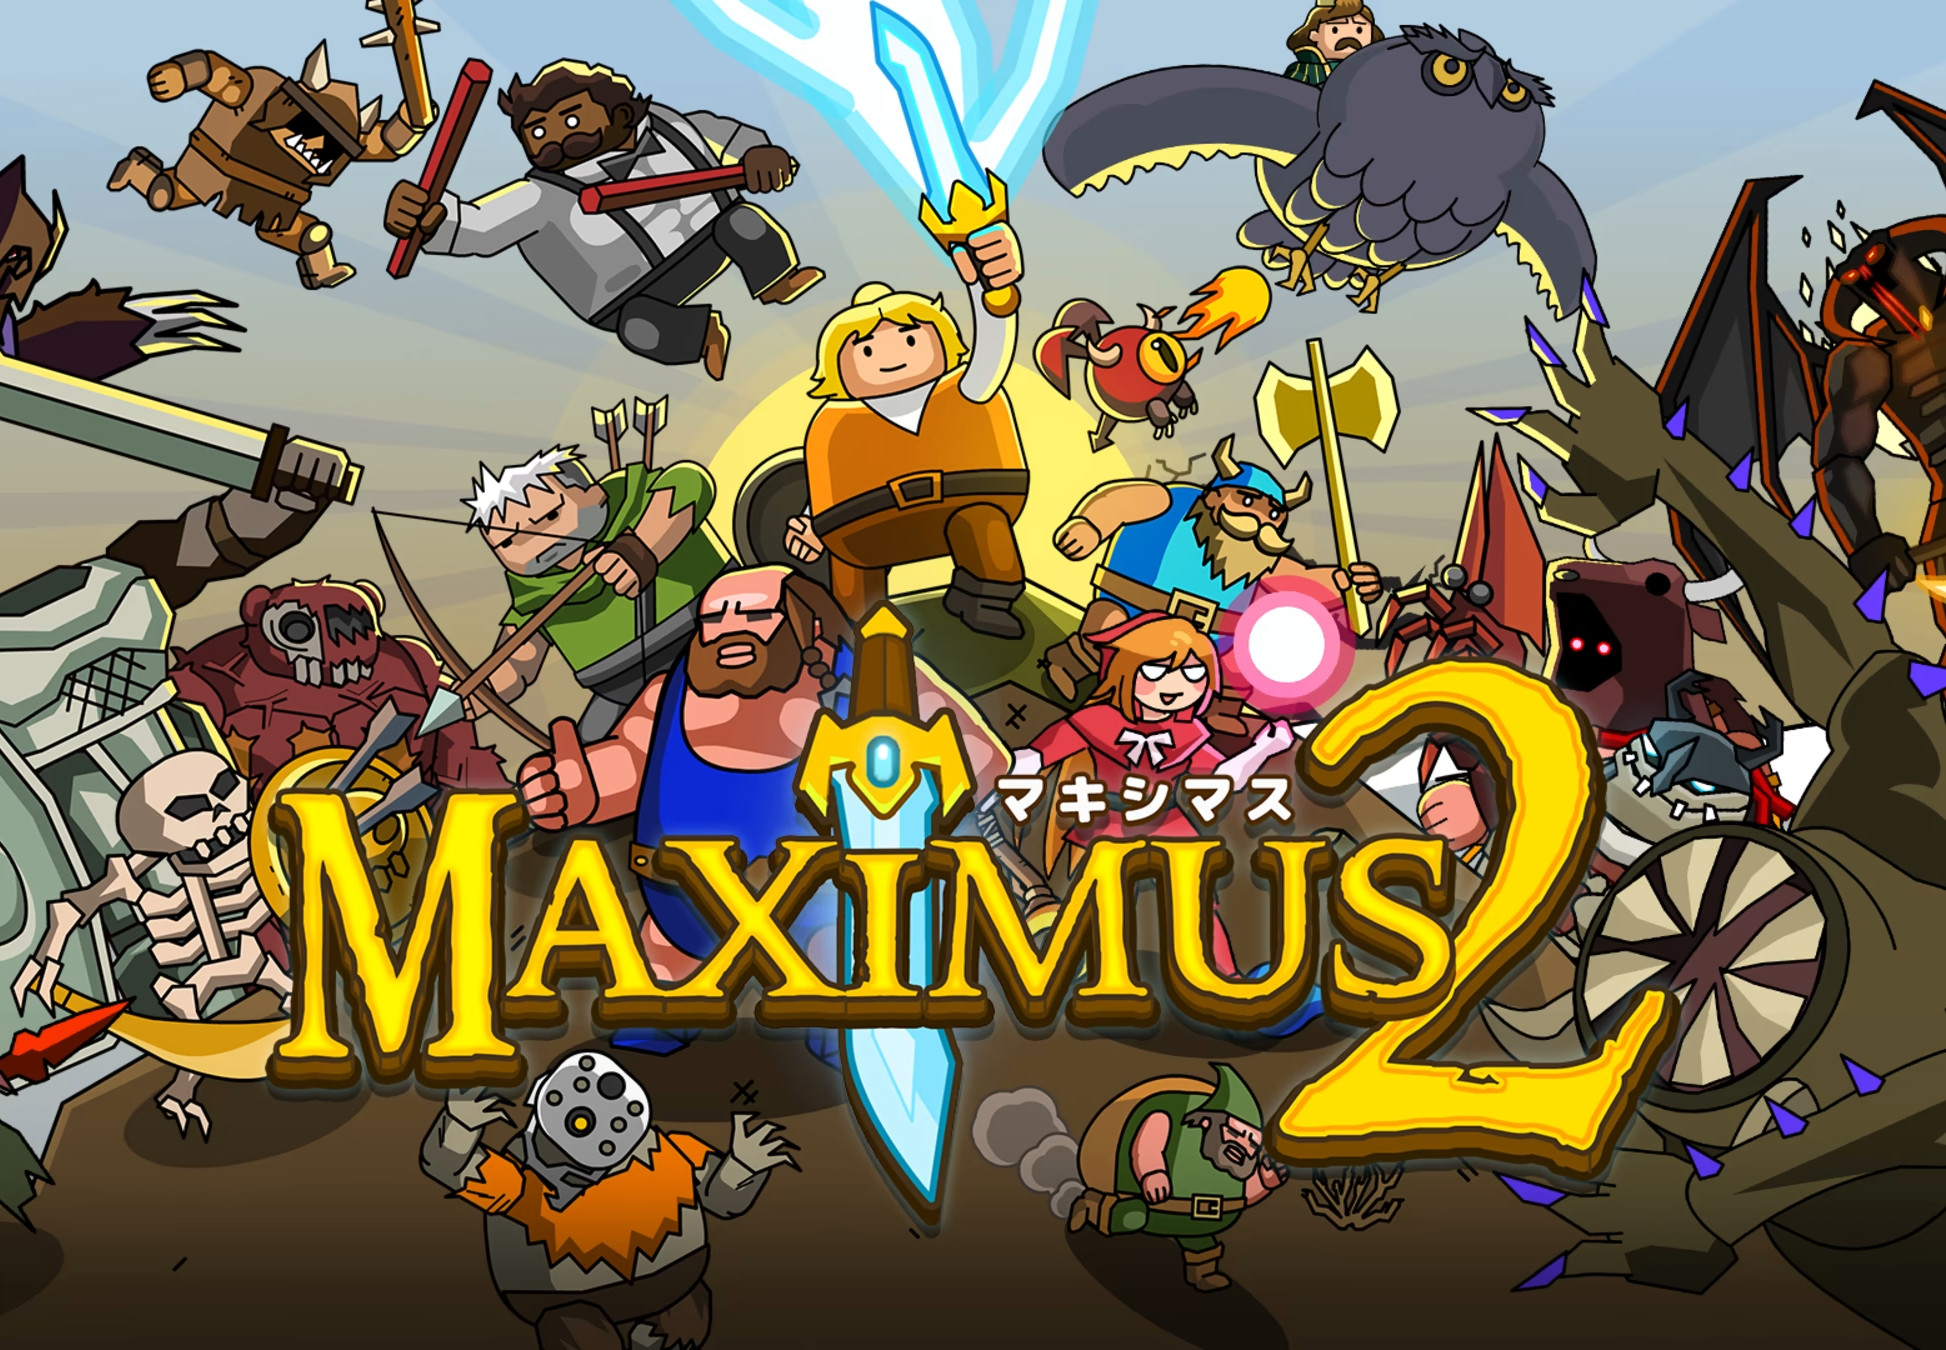 [$ 4.24] Maximus 2: Street Gladiators Steam CD Key